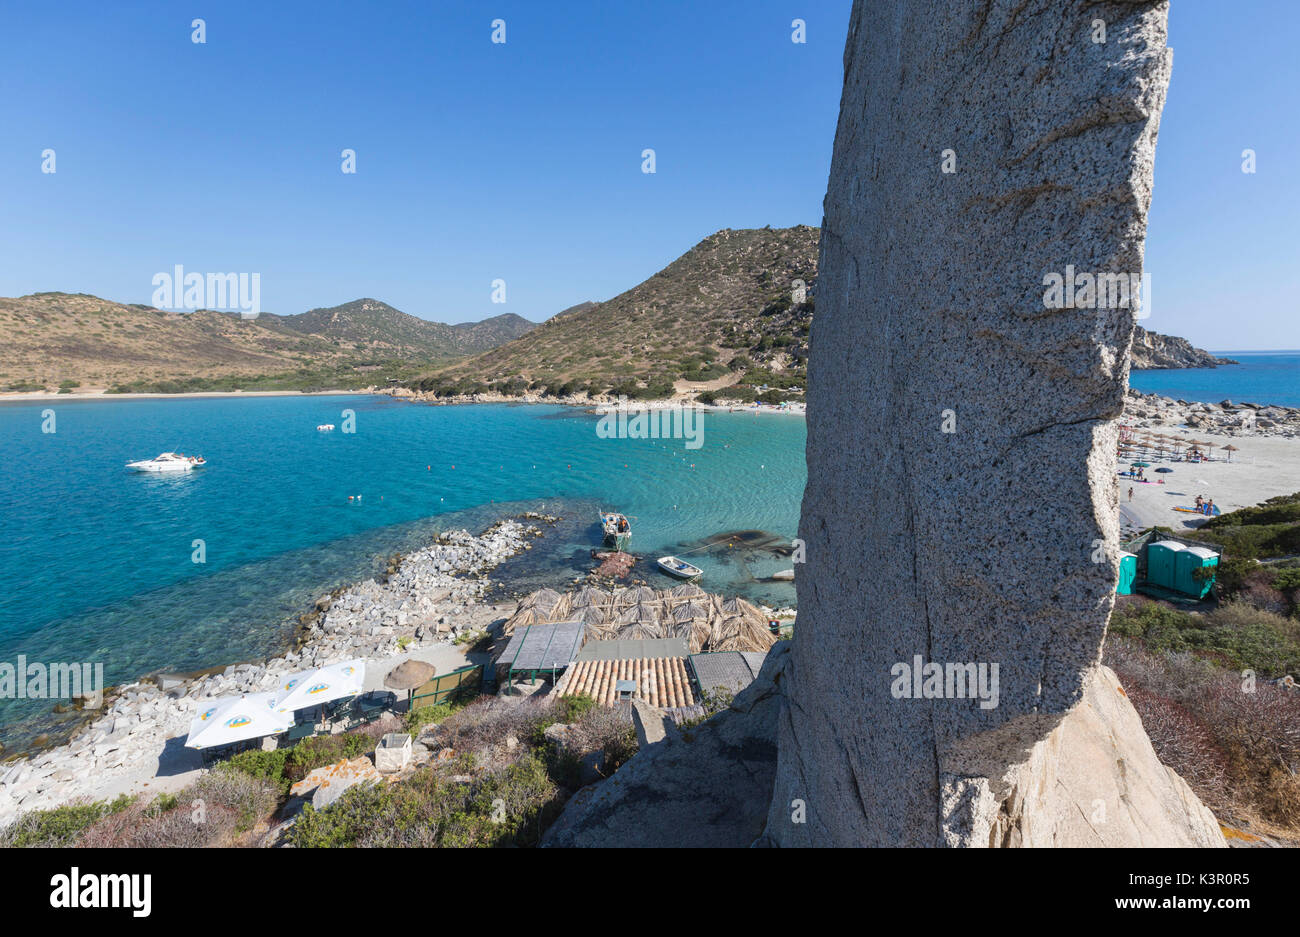 Rocce bianche il telaio il turchese del mare e la spiaggia sabbiosa Punta Molentis Villasimius Cagliari Sardegna Italia Europa Foto Stock